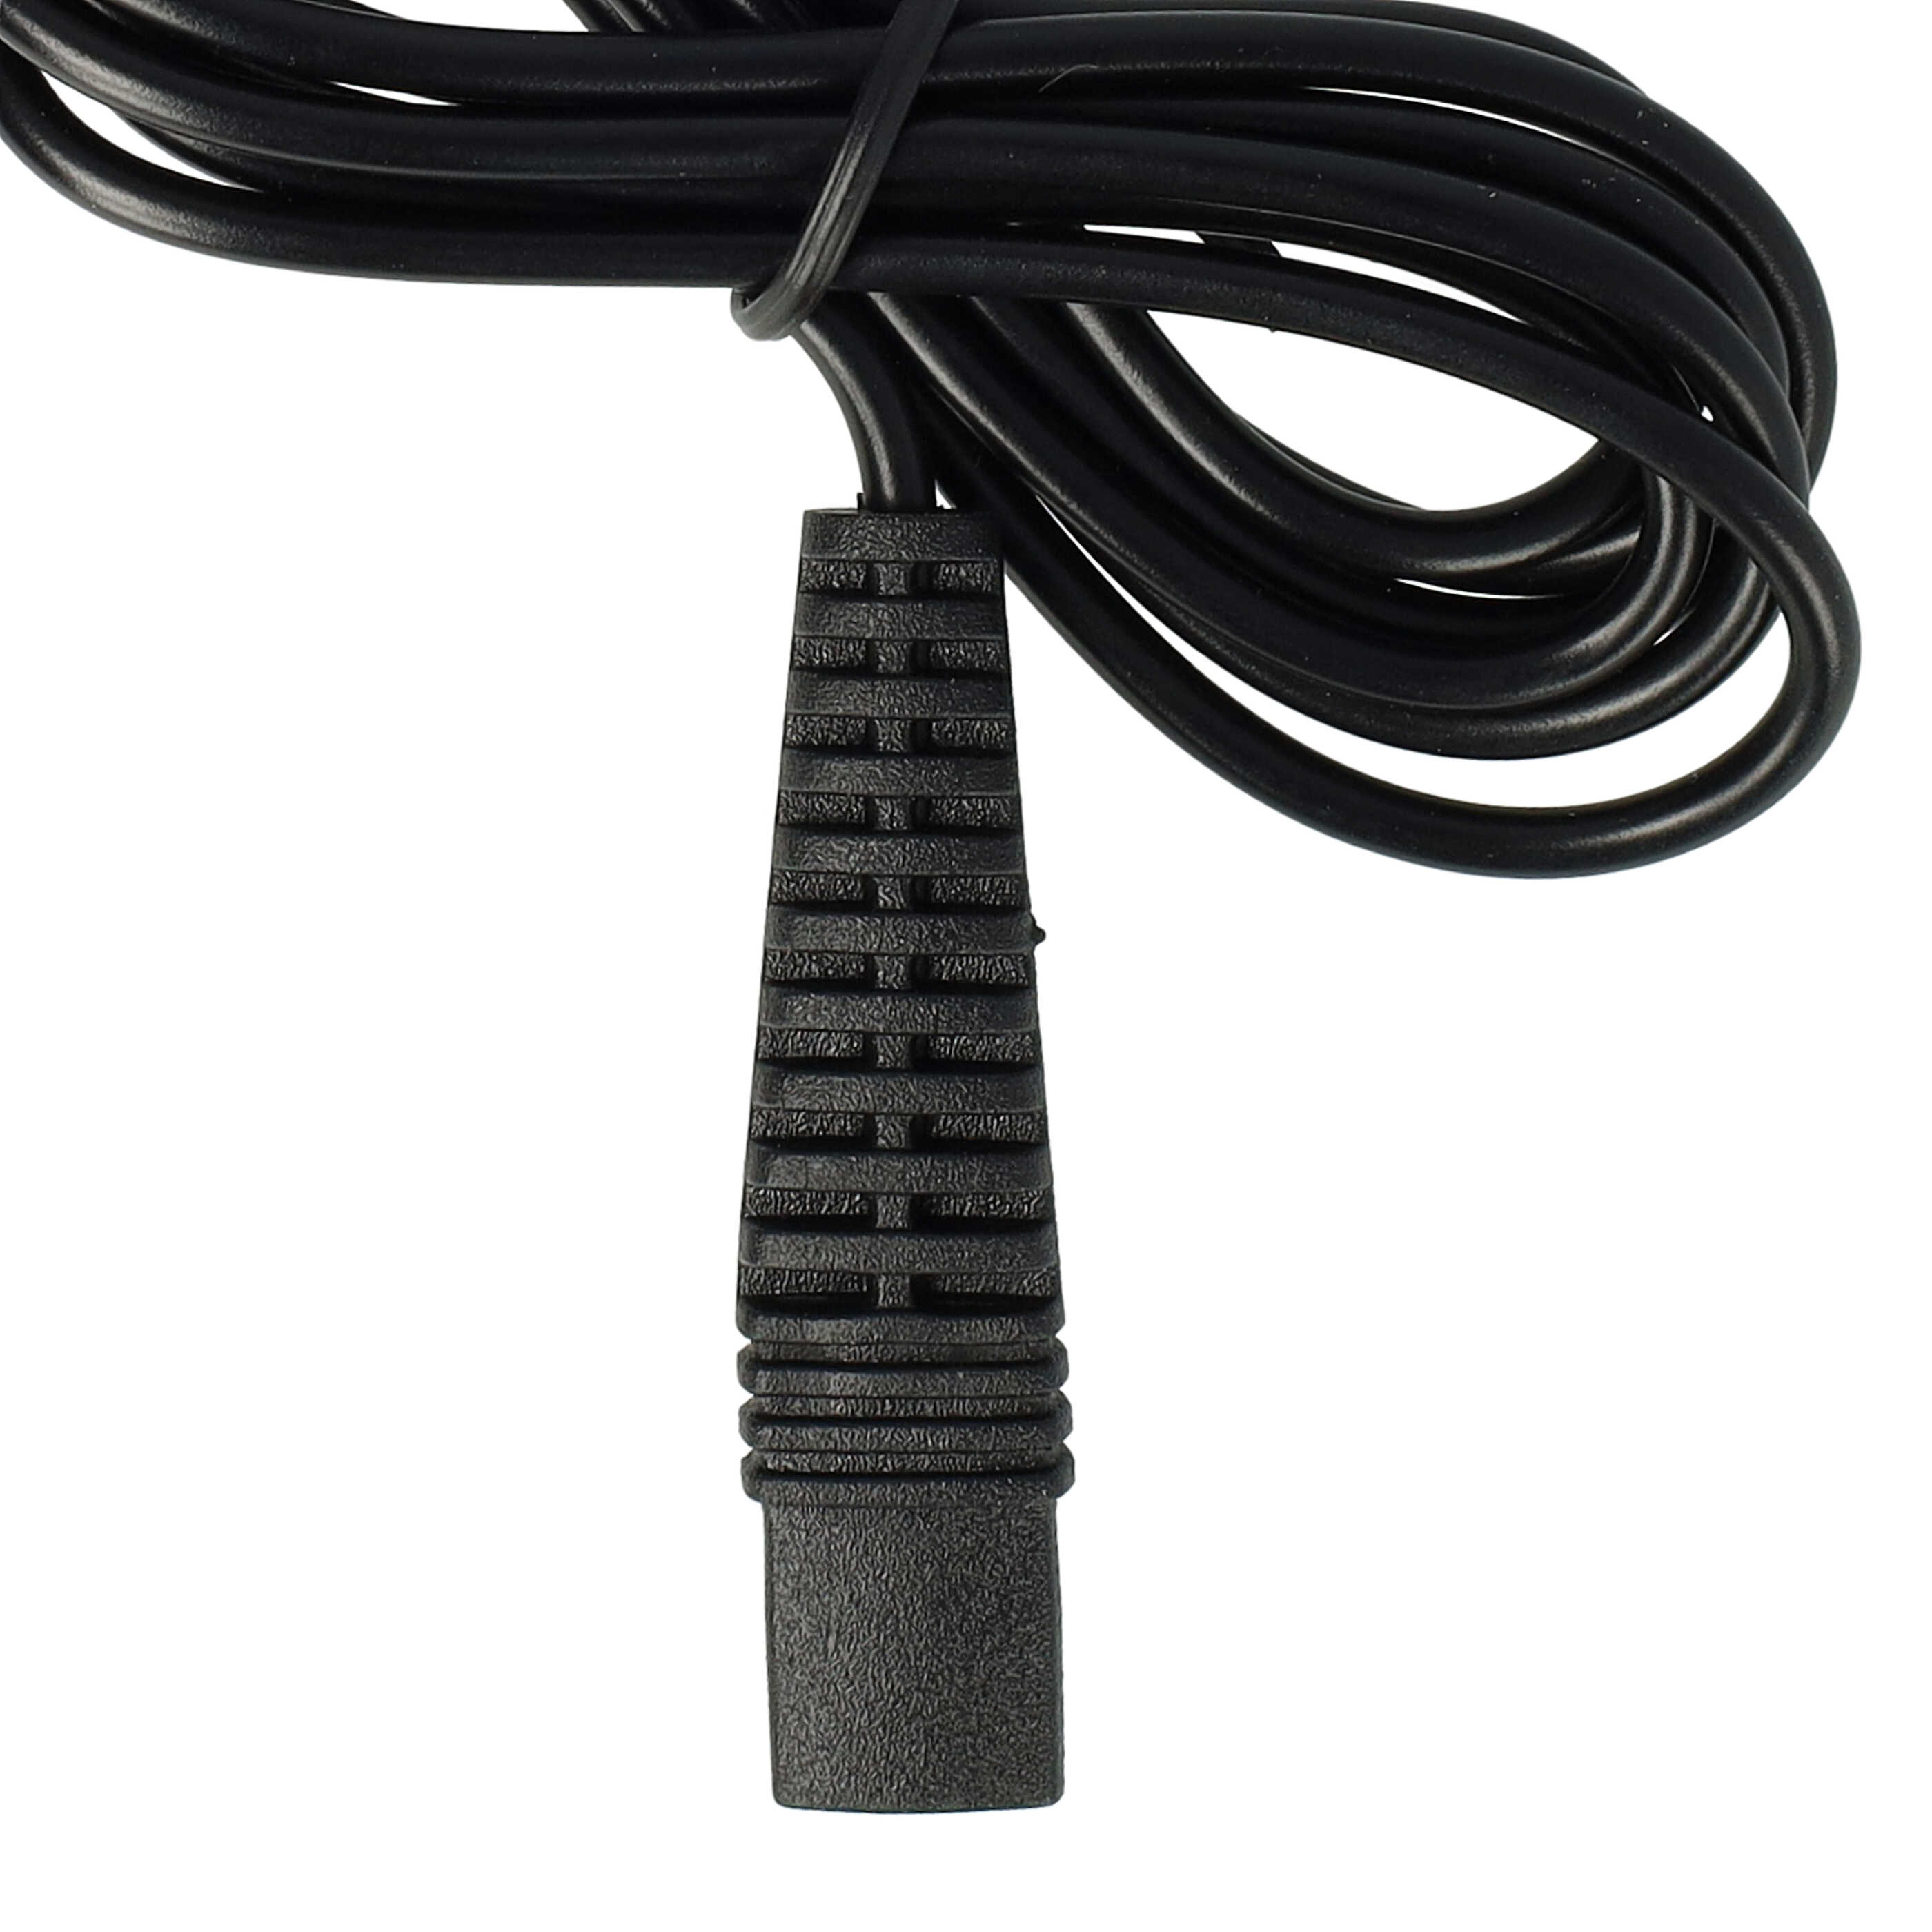 Cable de carga USB para afeitadoras, cepillo de dientes, etc. Braun, Oral-B HC20 (5611) - 120 cm